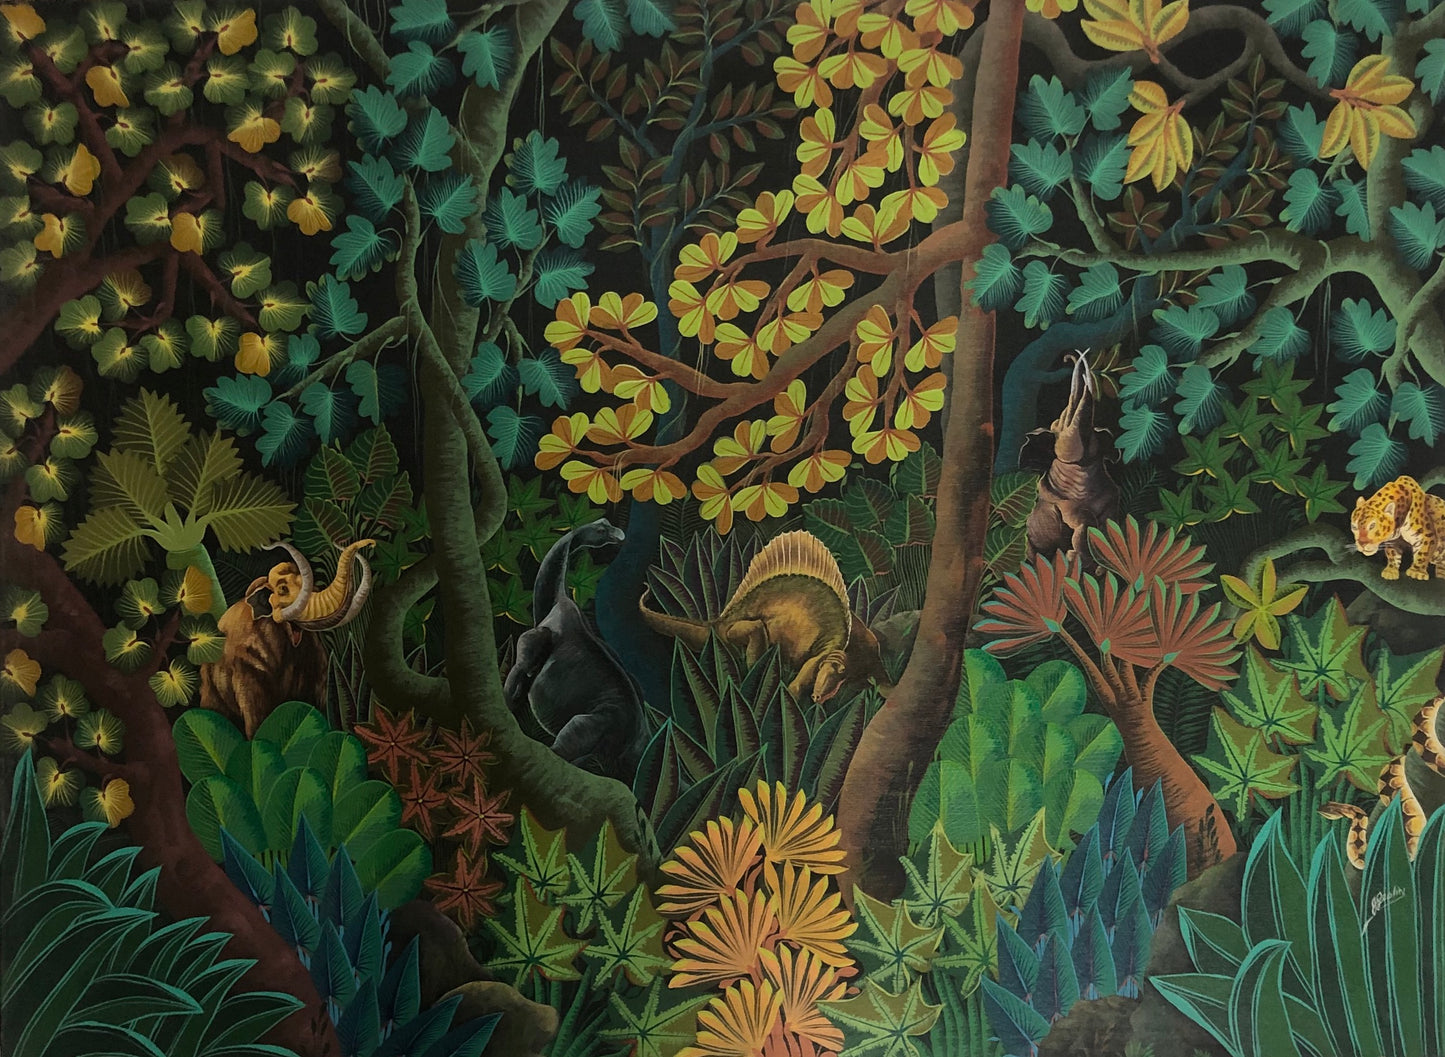 Jacques Geslin 36"x48" Bosque tropical Óleo sobre lienzo #96-3-96-HA